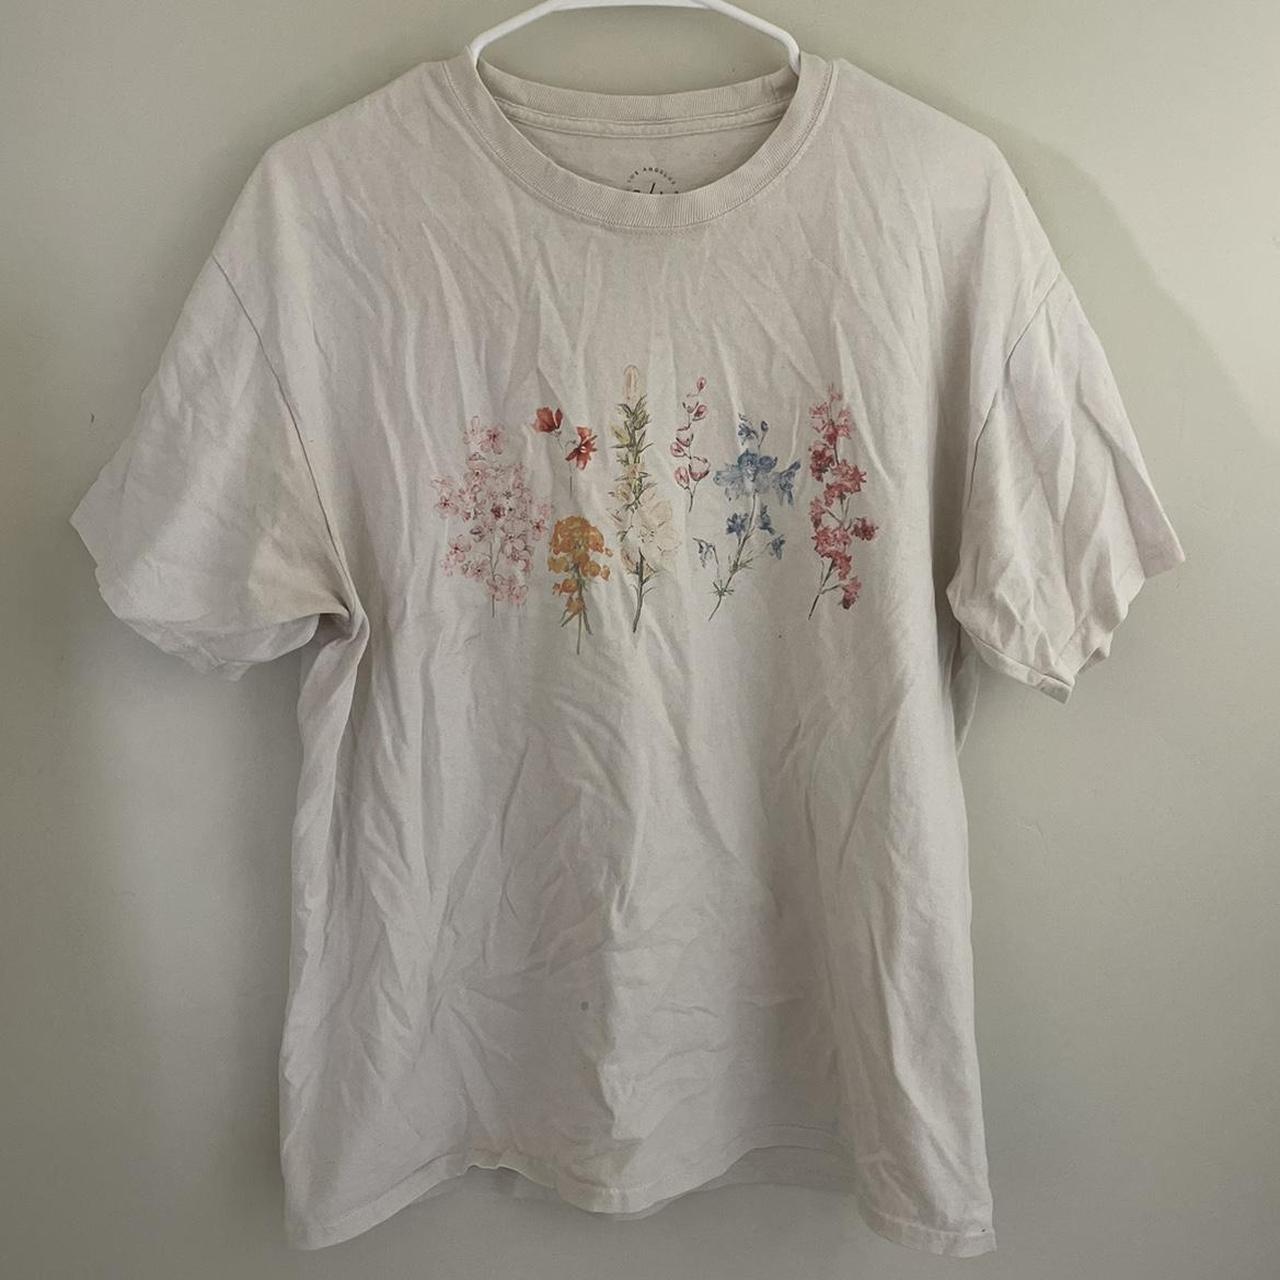 PacSun Women's Cream and White T-shirt